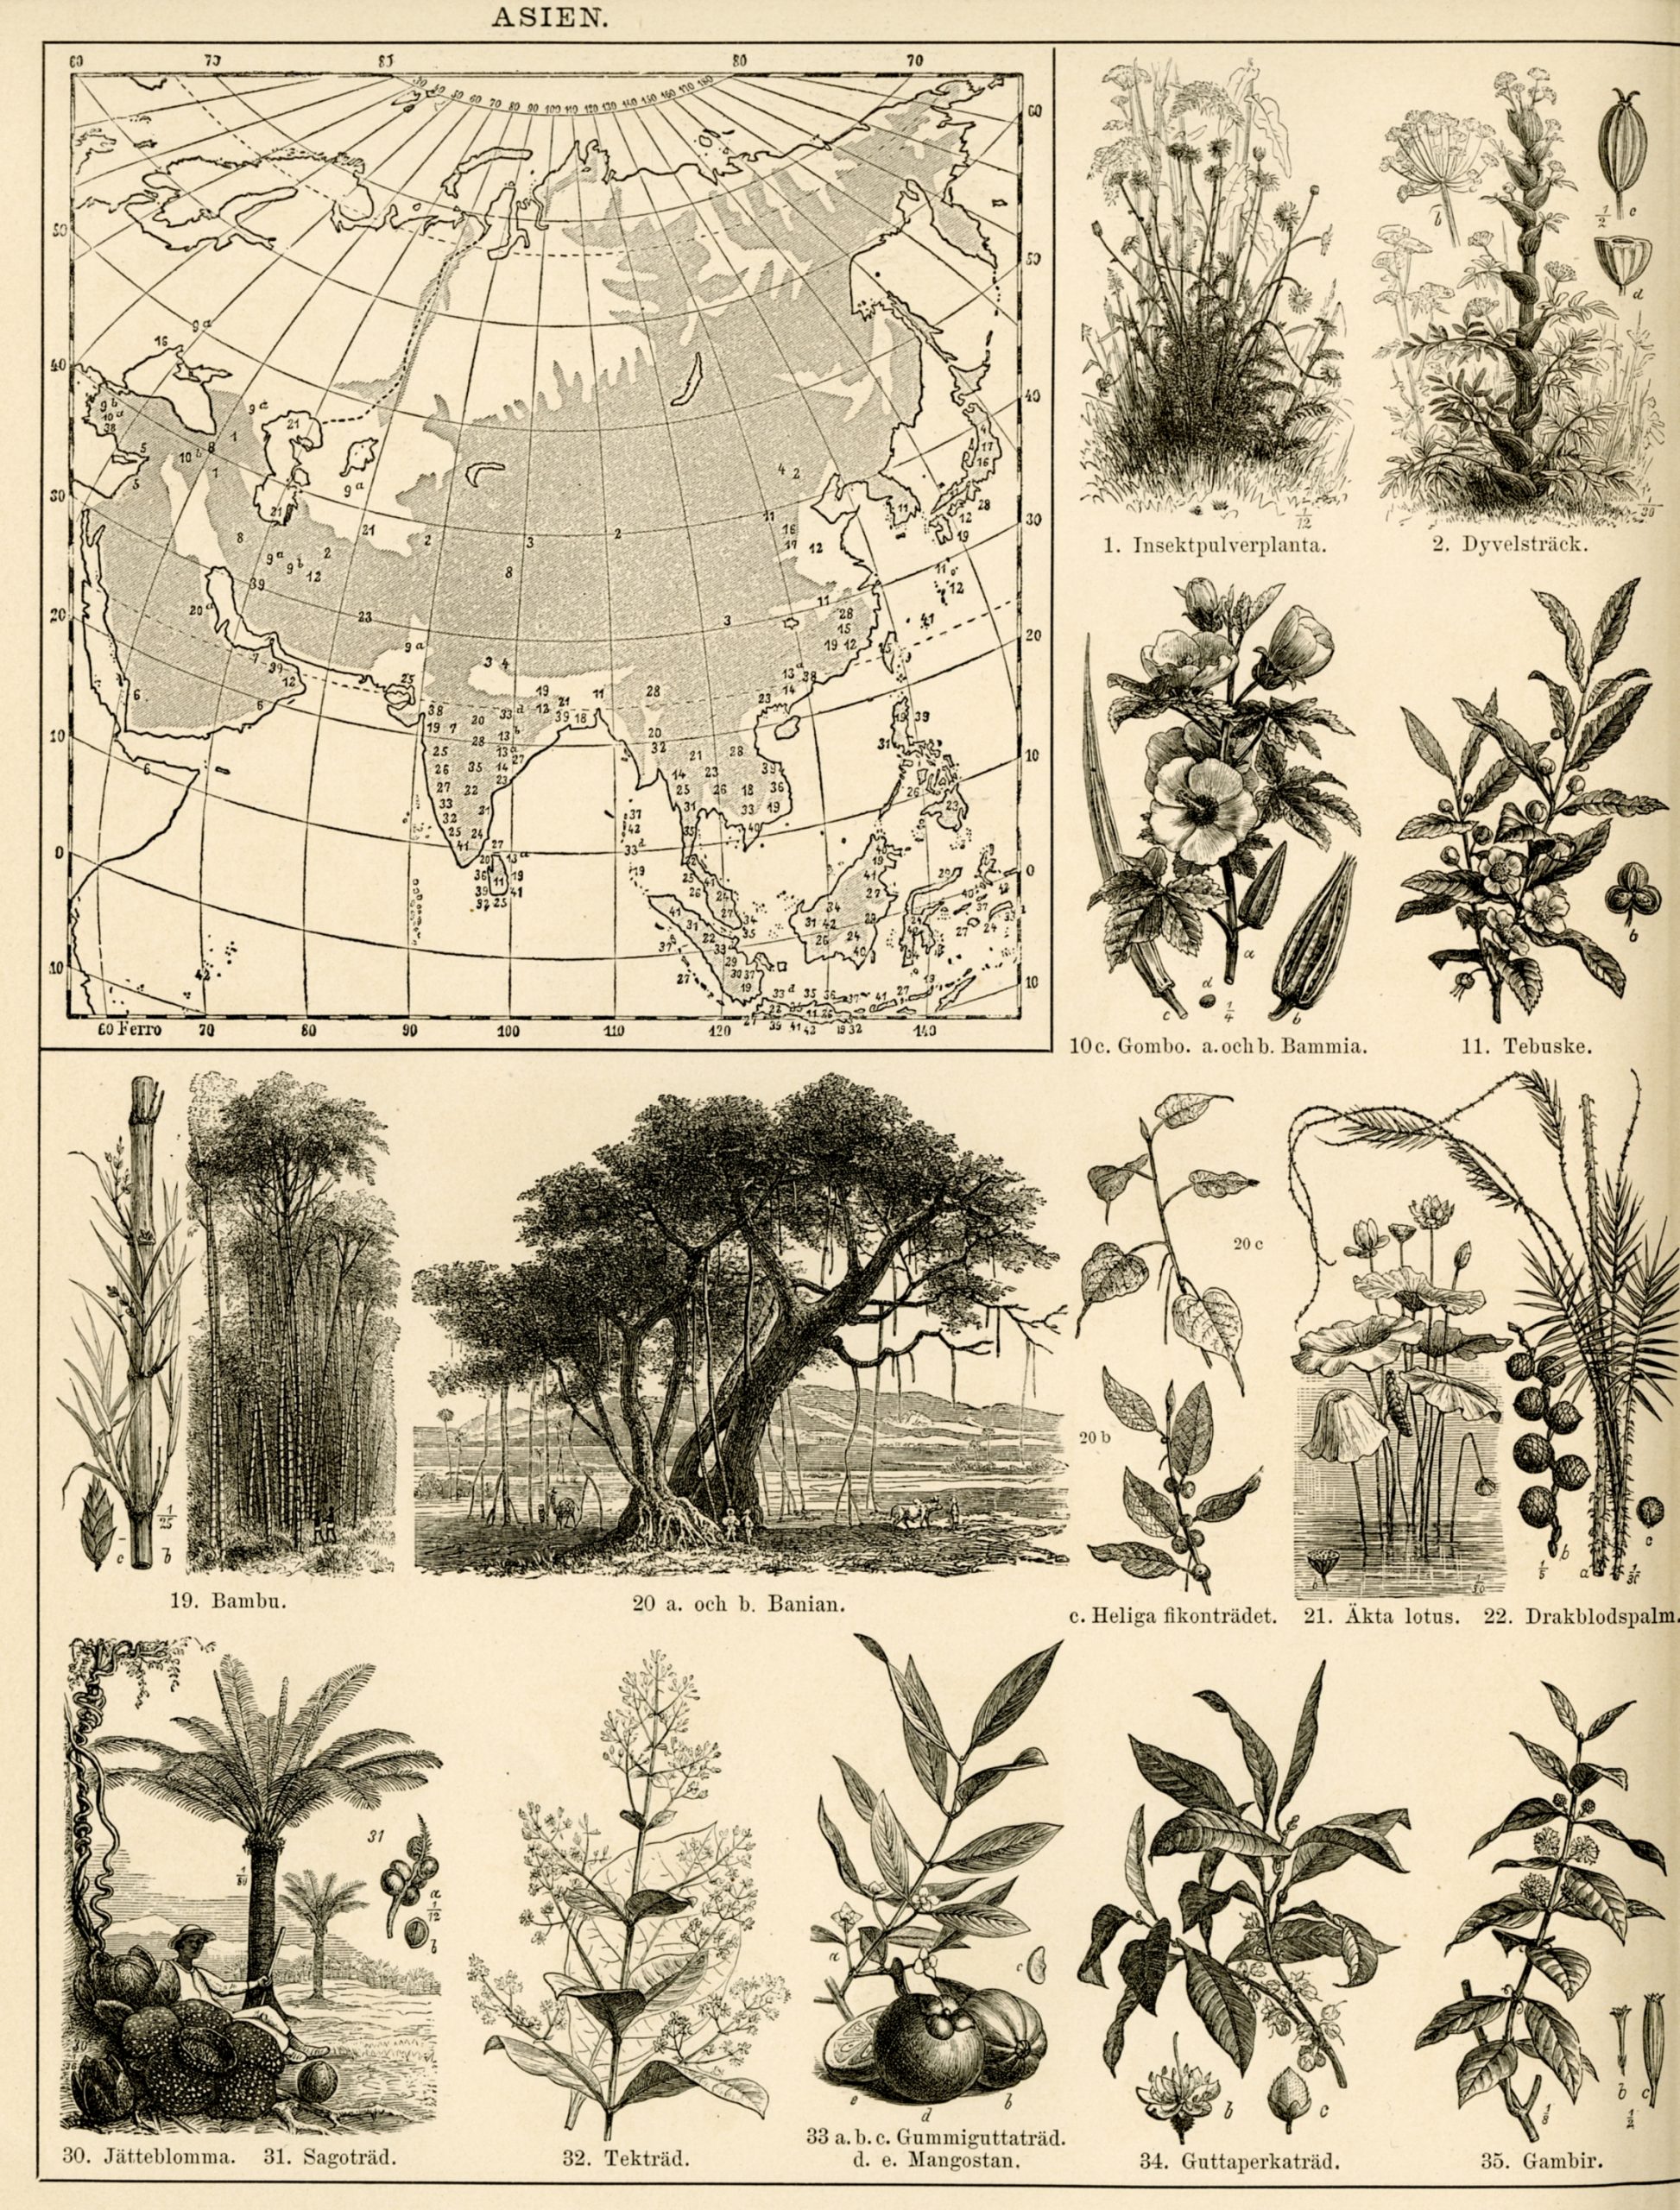 6. Naturhistorisk och etnografisk atlas (1881)